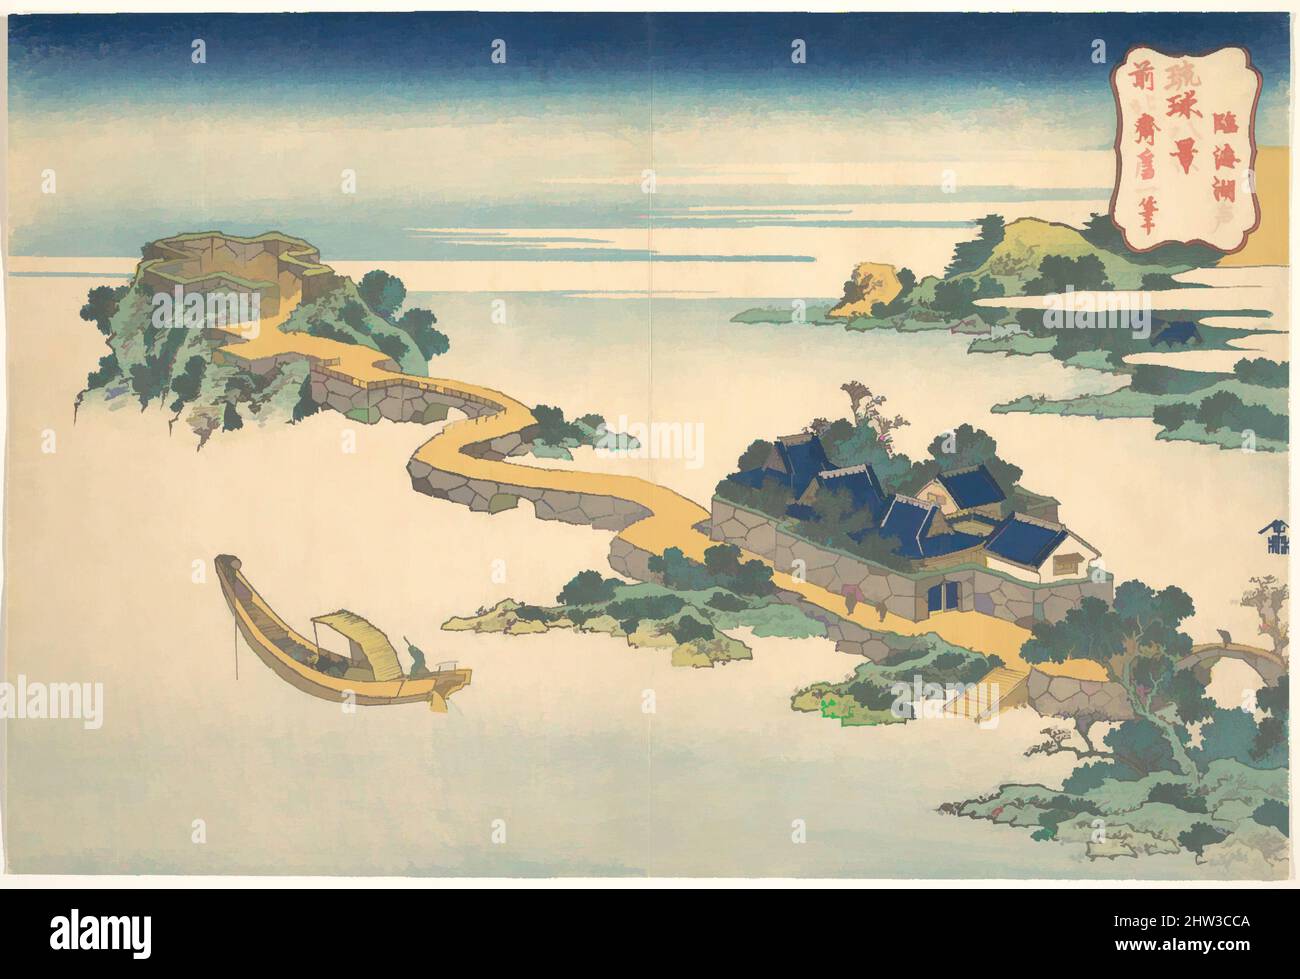 Arte ispirata da 琉球八景 臨海潮（湖）聲, Sound of the Lake at Rinkai (Rinkai kosei), dalla serie otto viste delle isole Ryūkyū (Ryūkyū hakkei), periodo Edo (1615–1868), ca. 1832, Giappone, stampa a blocchi di legno policromi; inchiostro e colore su carta, Oban, 9 3/4 x 14 1/2 pollici (24,8 x 36,8 cm), stampe, opere classiche modernizzate da Artotop con un tuffo di modernità. Forme, colore e valore, impatto visivo accattivante sulle emozioni artistiche attraverso la libertà delle opere d'arte in modo contemporaneo. Un messaggio senza tempo che persegue una nuova direzione selvaggiamente creativa. Artisti che si rivolgono al supporto digitale e creano l'NFT Artotop Foto Stock